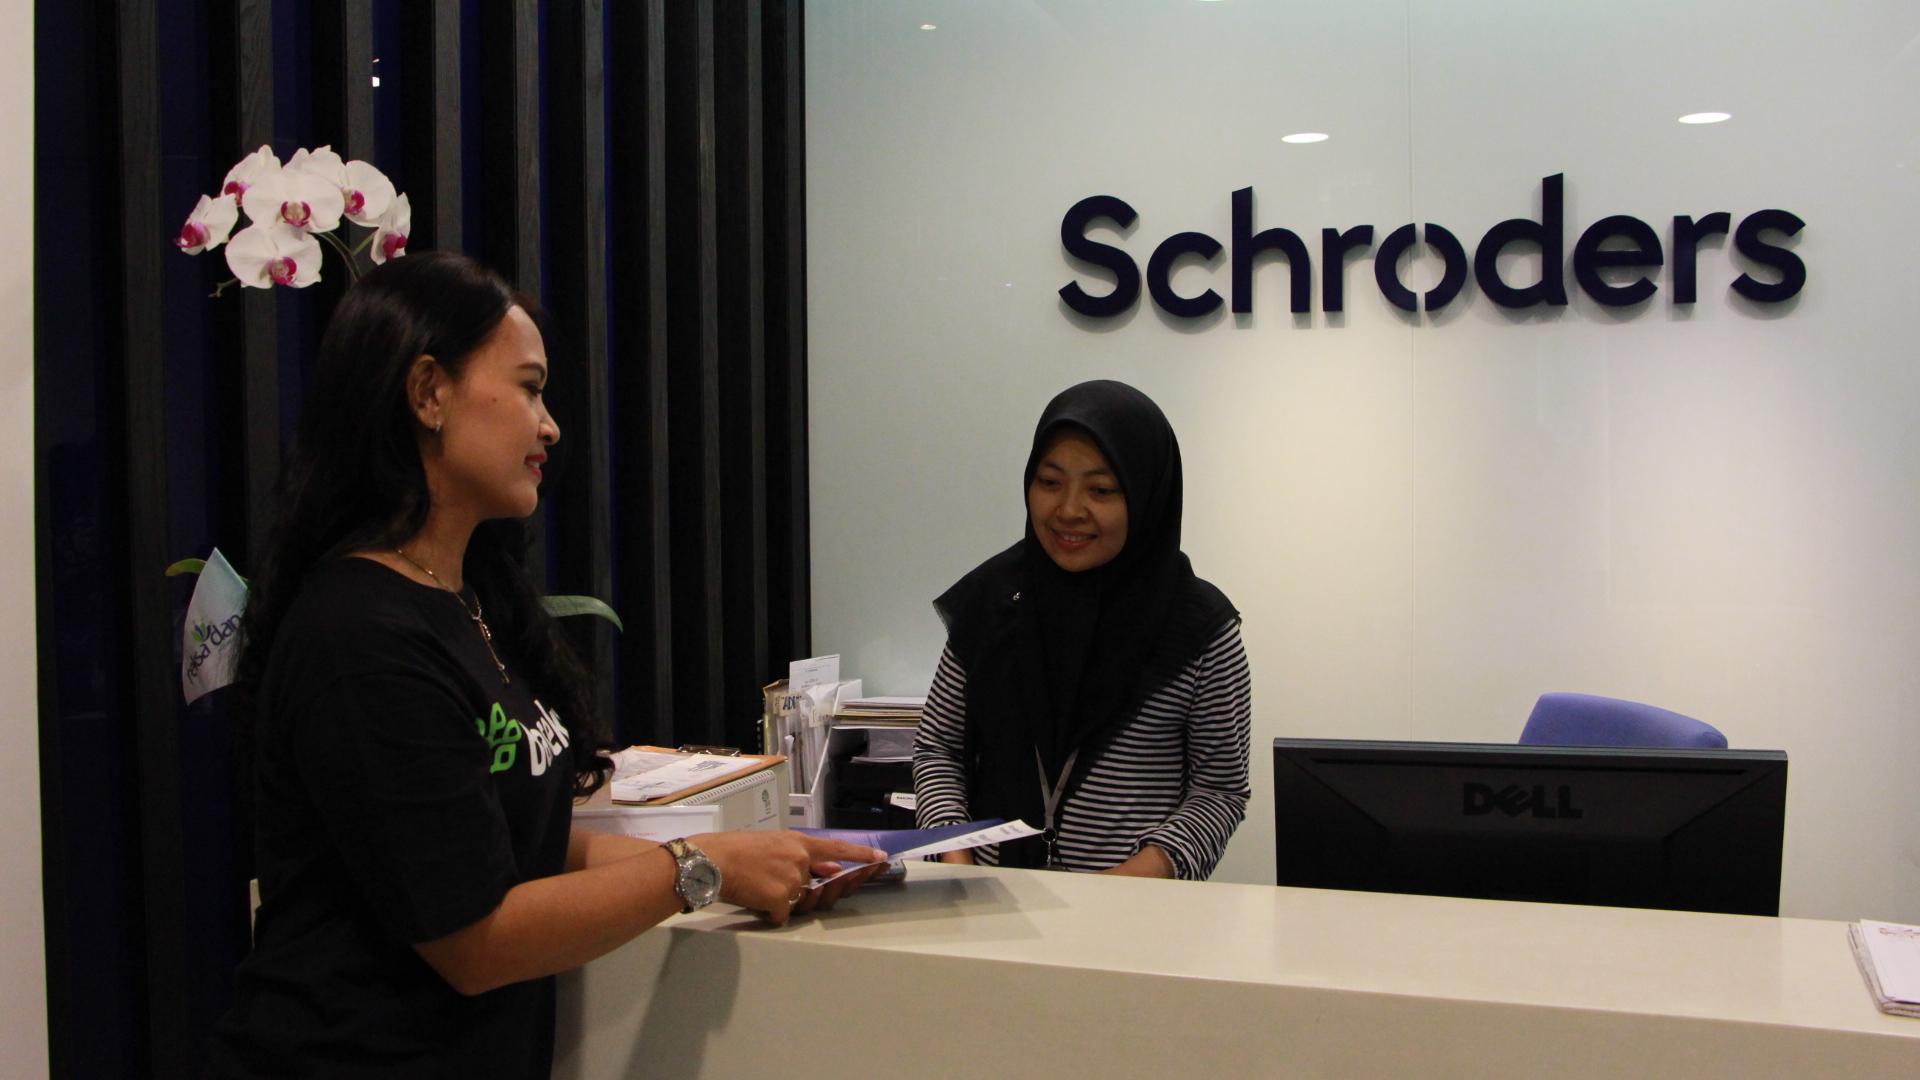 Khawatir Hasil Pemilu 2019? Ini Rekomendasi Investasi dari Schroders Indonesia